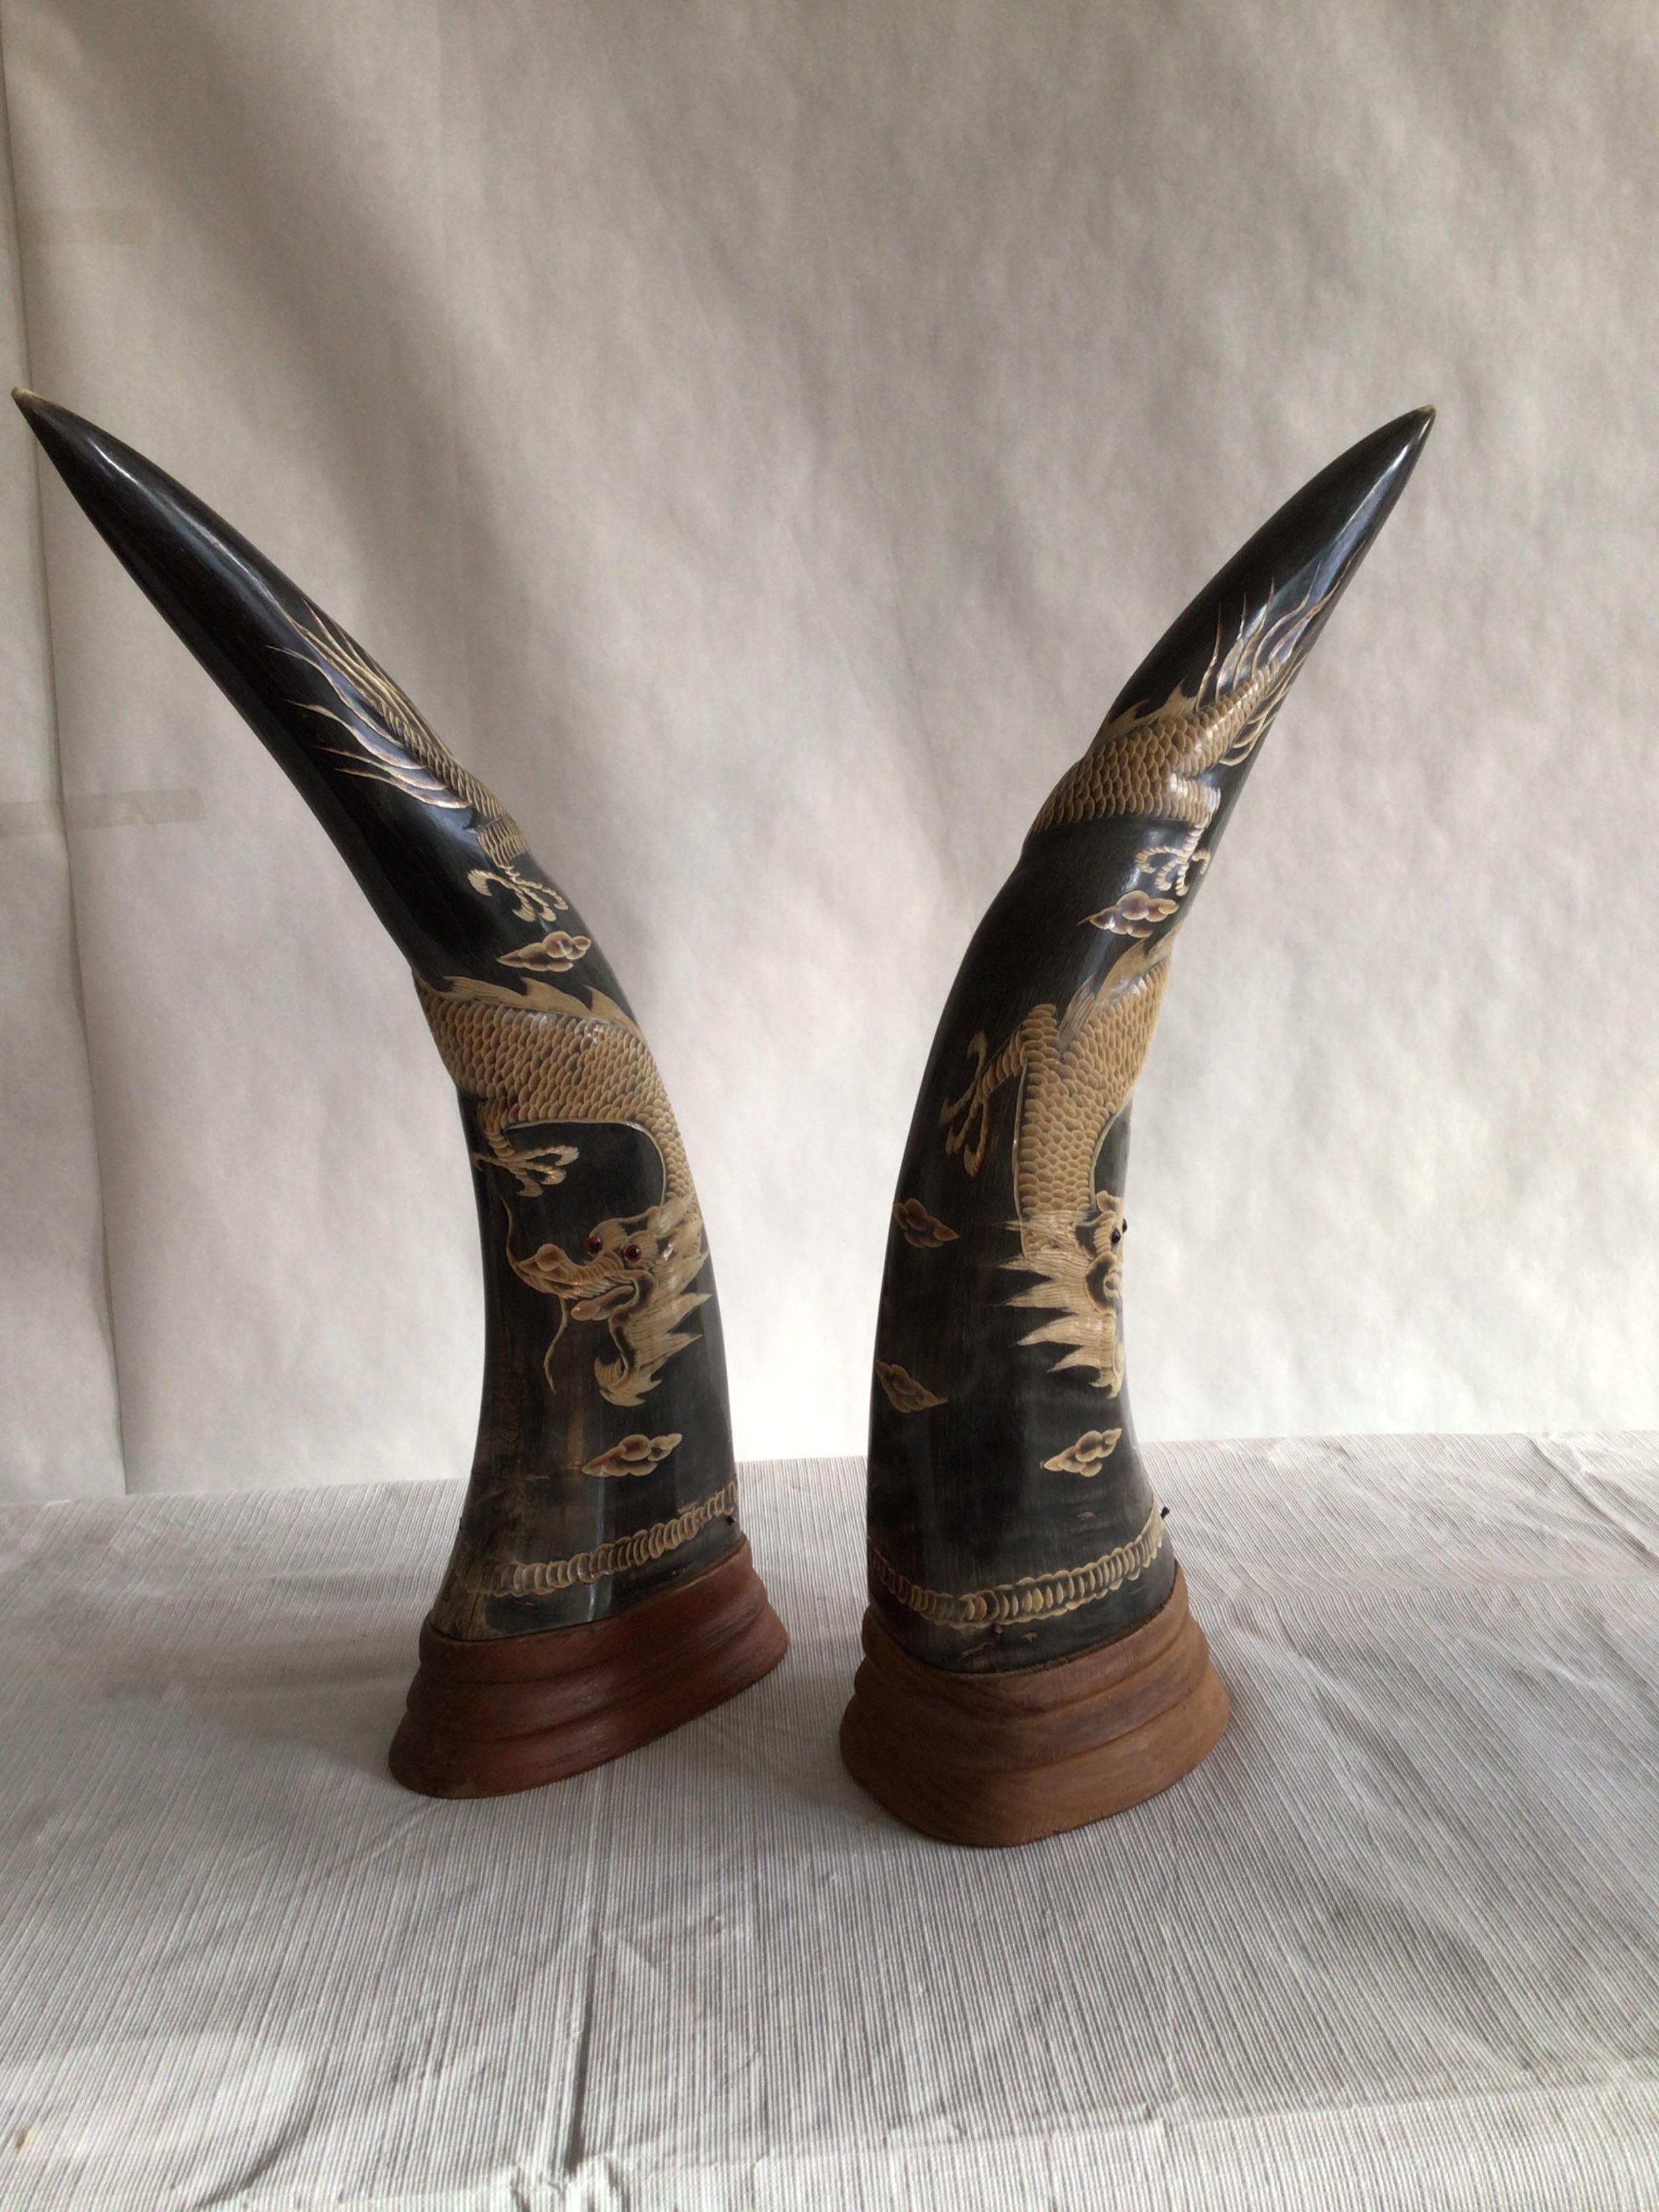 Paar geschnitzte Hörner aus den 1950er Jahren mit Drachenmotiv auf Holzsockel. 
Sie sind ein absolutes Statement.